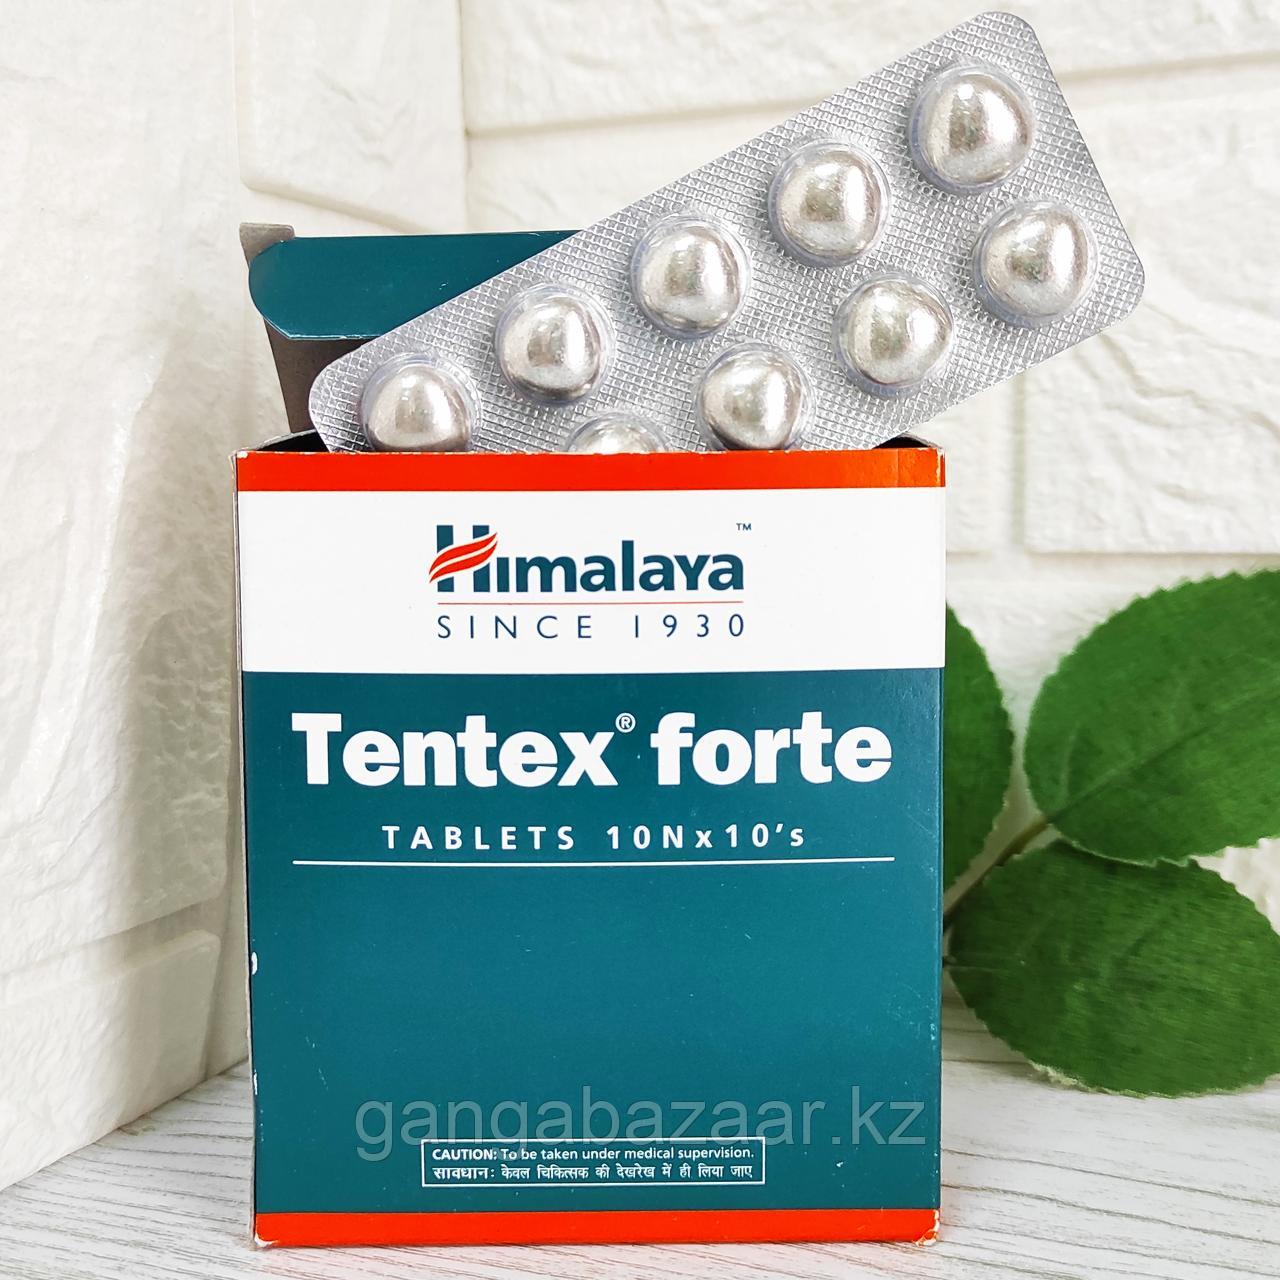 Тентекс Форте Хималая (Tentex Forte Himalaya) - для потенции, поддержания эрекции, 10 таб